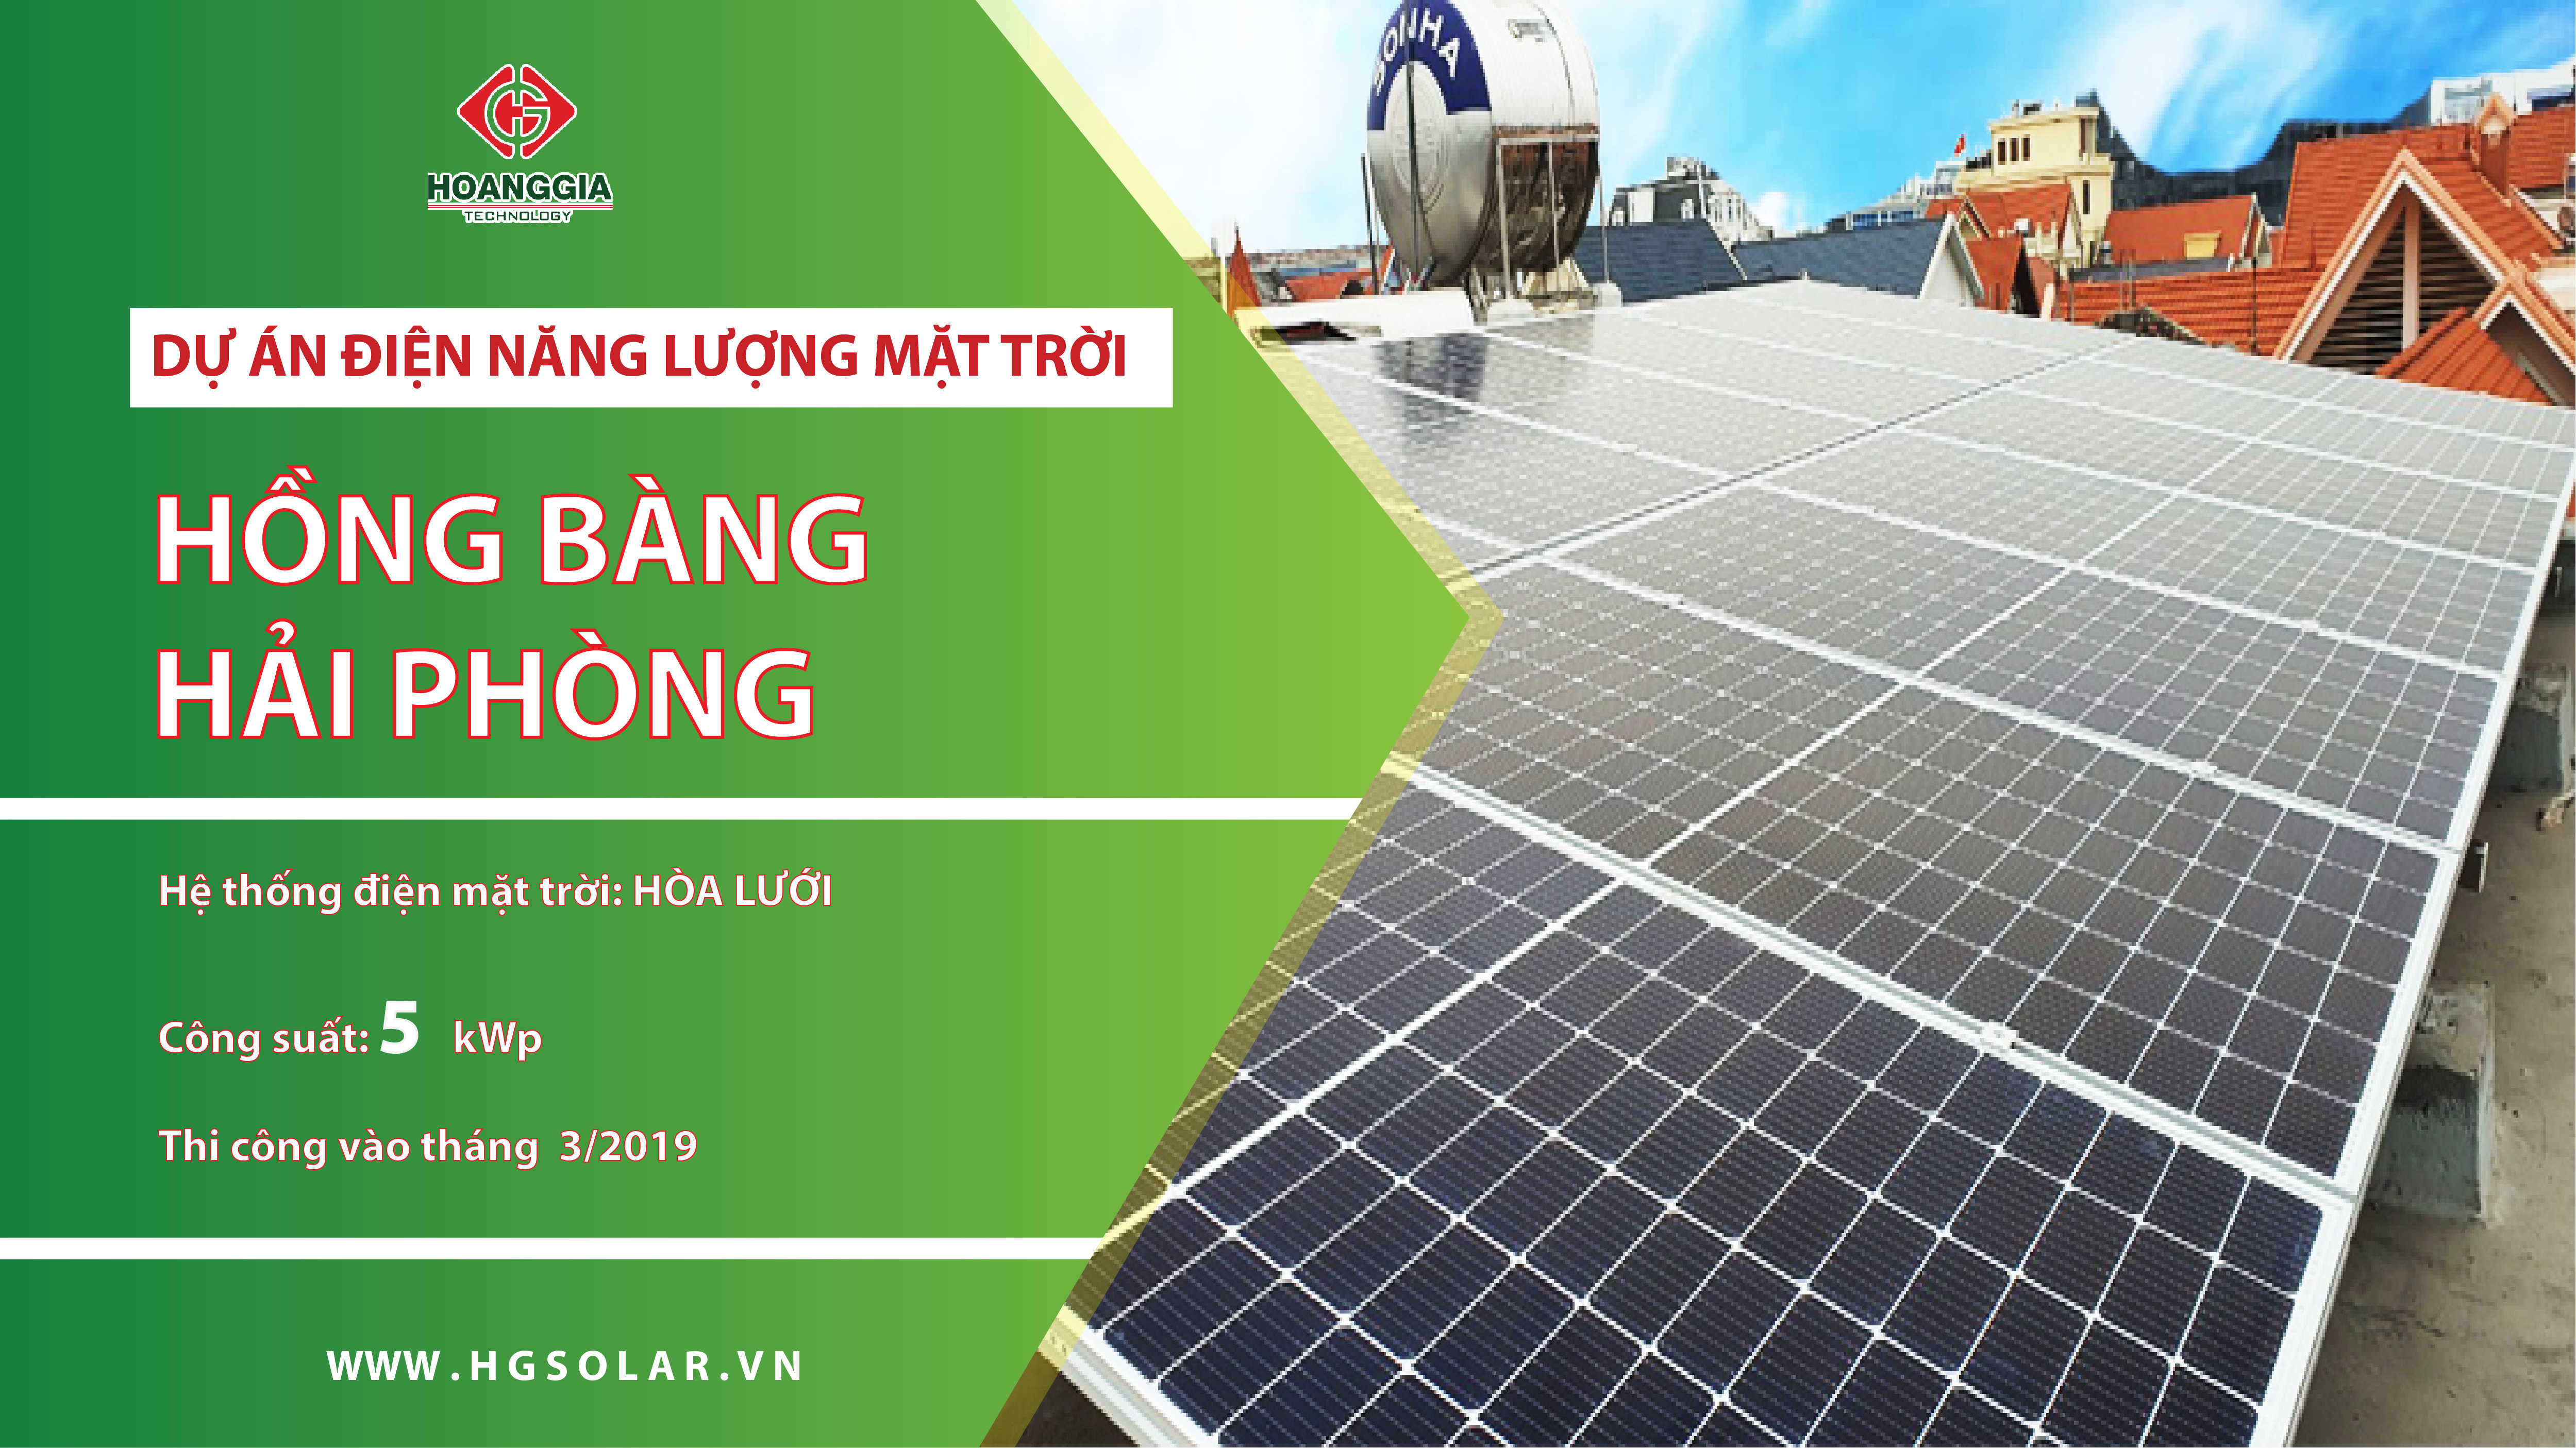 Dự án: Hệ thống điện mặt trời hòa lưới 5kw cho hộ gia đình tại Quận Hồng Bàng, Hải Phòng